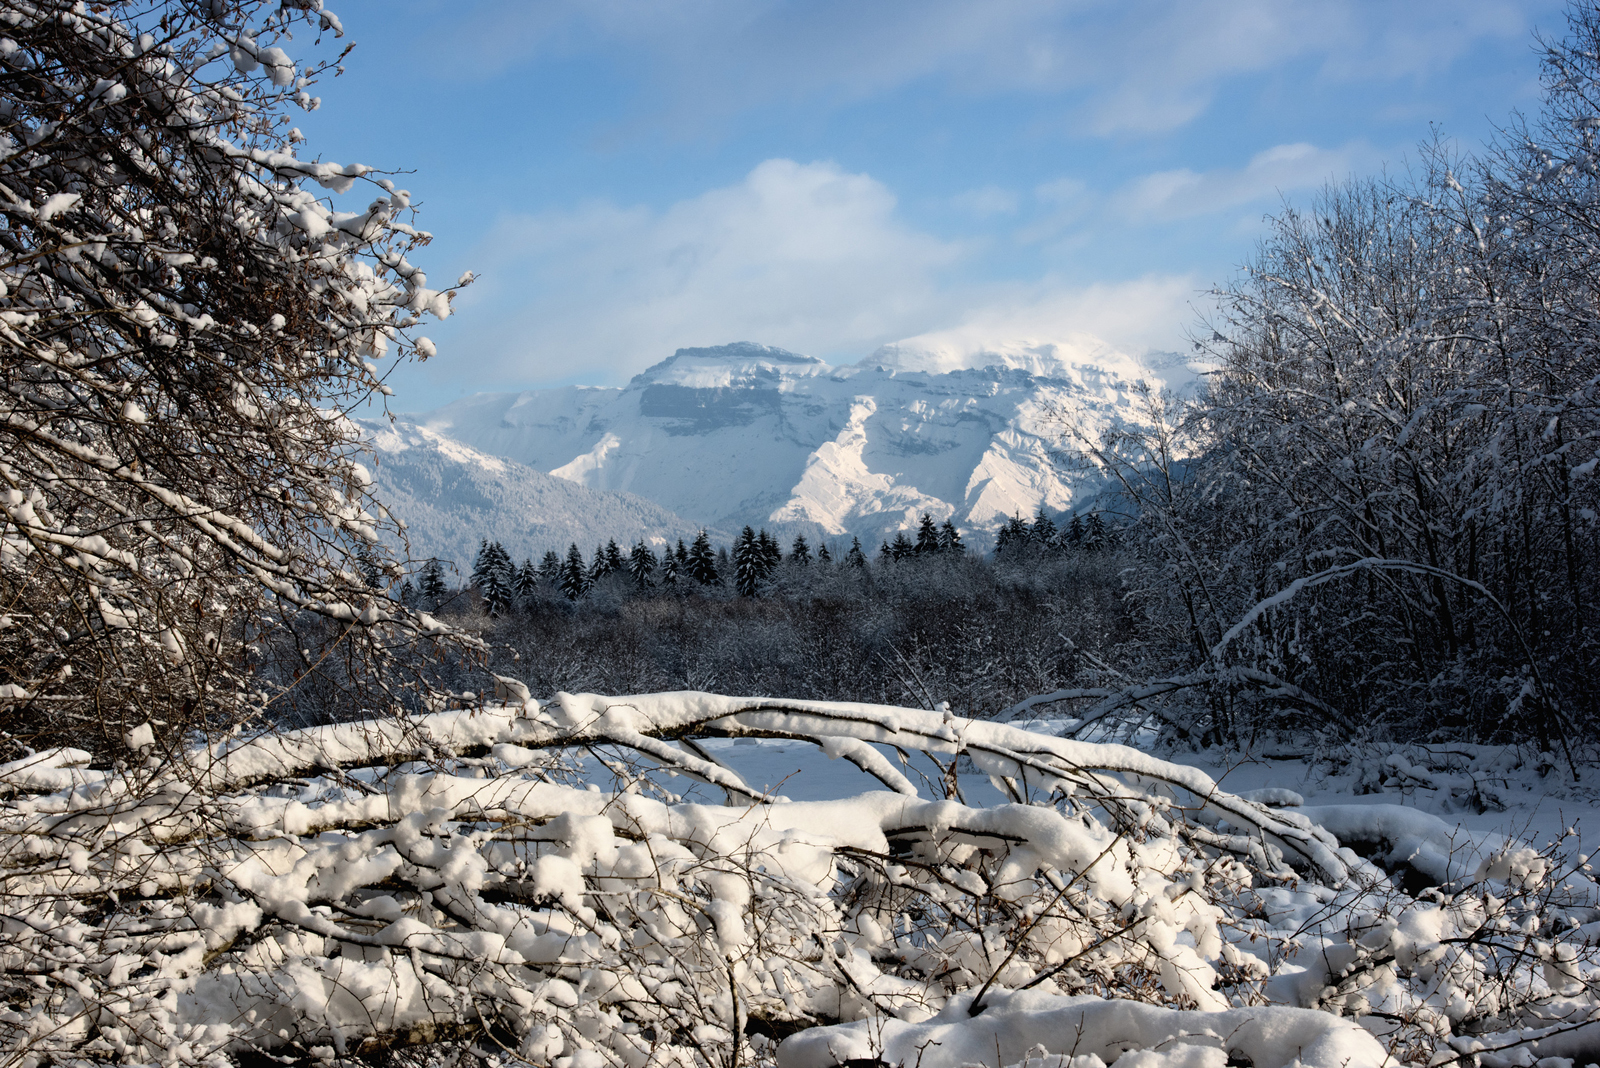 Par temps sec, la neige peut subir une sublimation. © Laurent GLASSON, Flickr, CC by-nc-nd 2.0